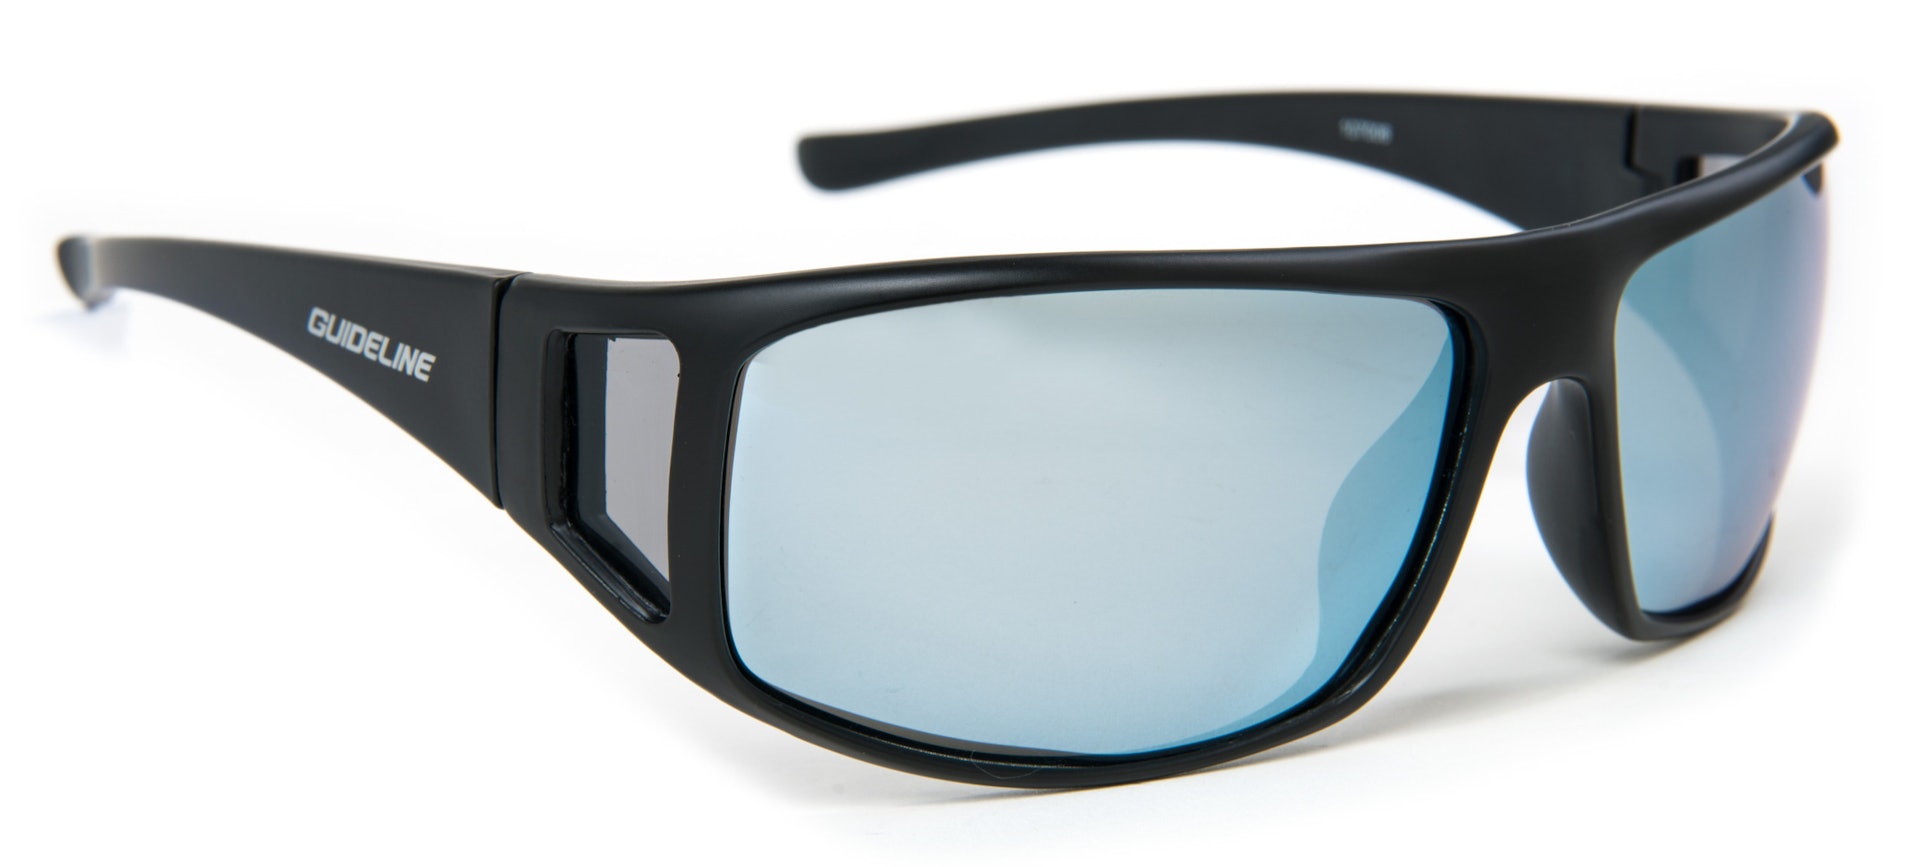 Tactical Sunglasses - Grey Lens (bilde 1 av 1)